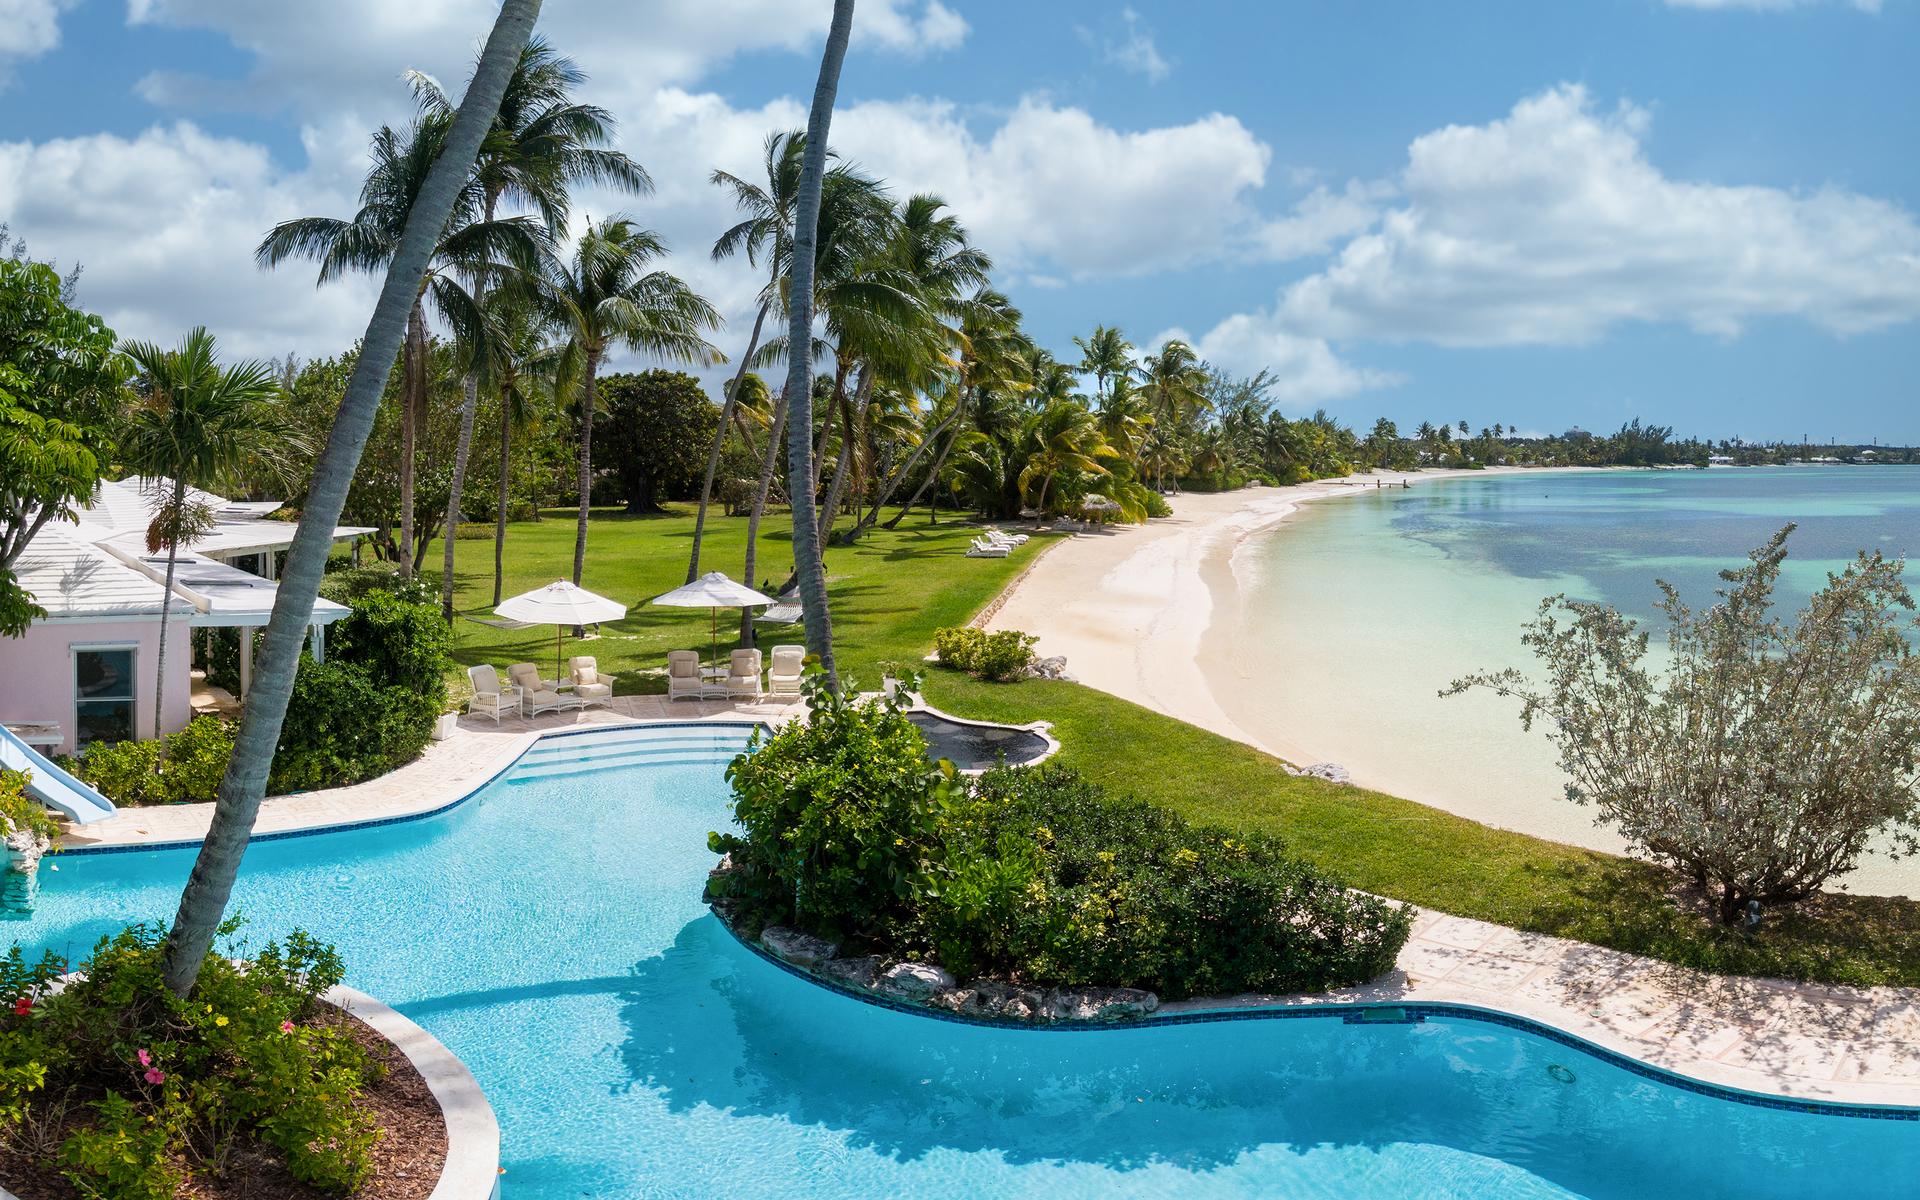 Precis vid stranden och vid gästhusen ligger ett soligt poolområde, med vattenrutschkana, pool och jacuzzi. 